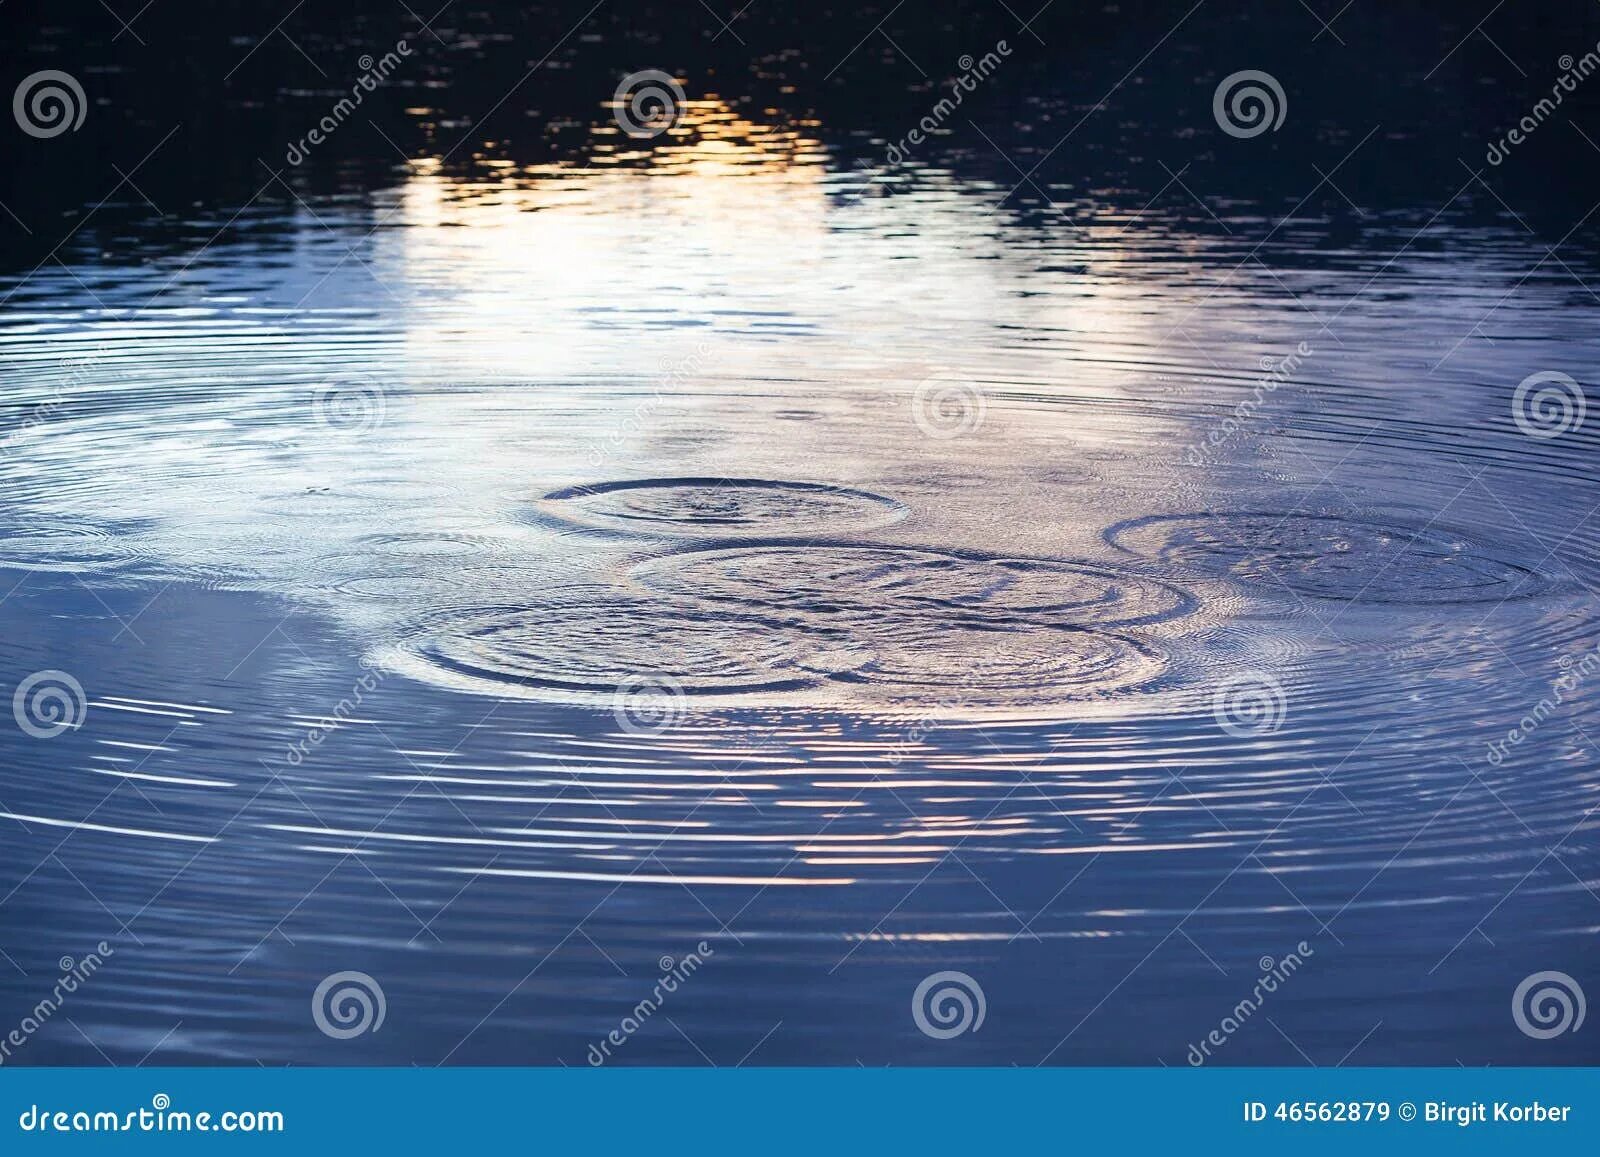 Круги на воде чья. Круги на воде. Картина круги на воде. Круги на воде озеро. Круги на луже.